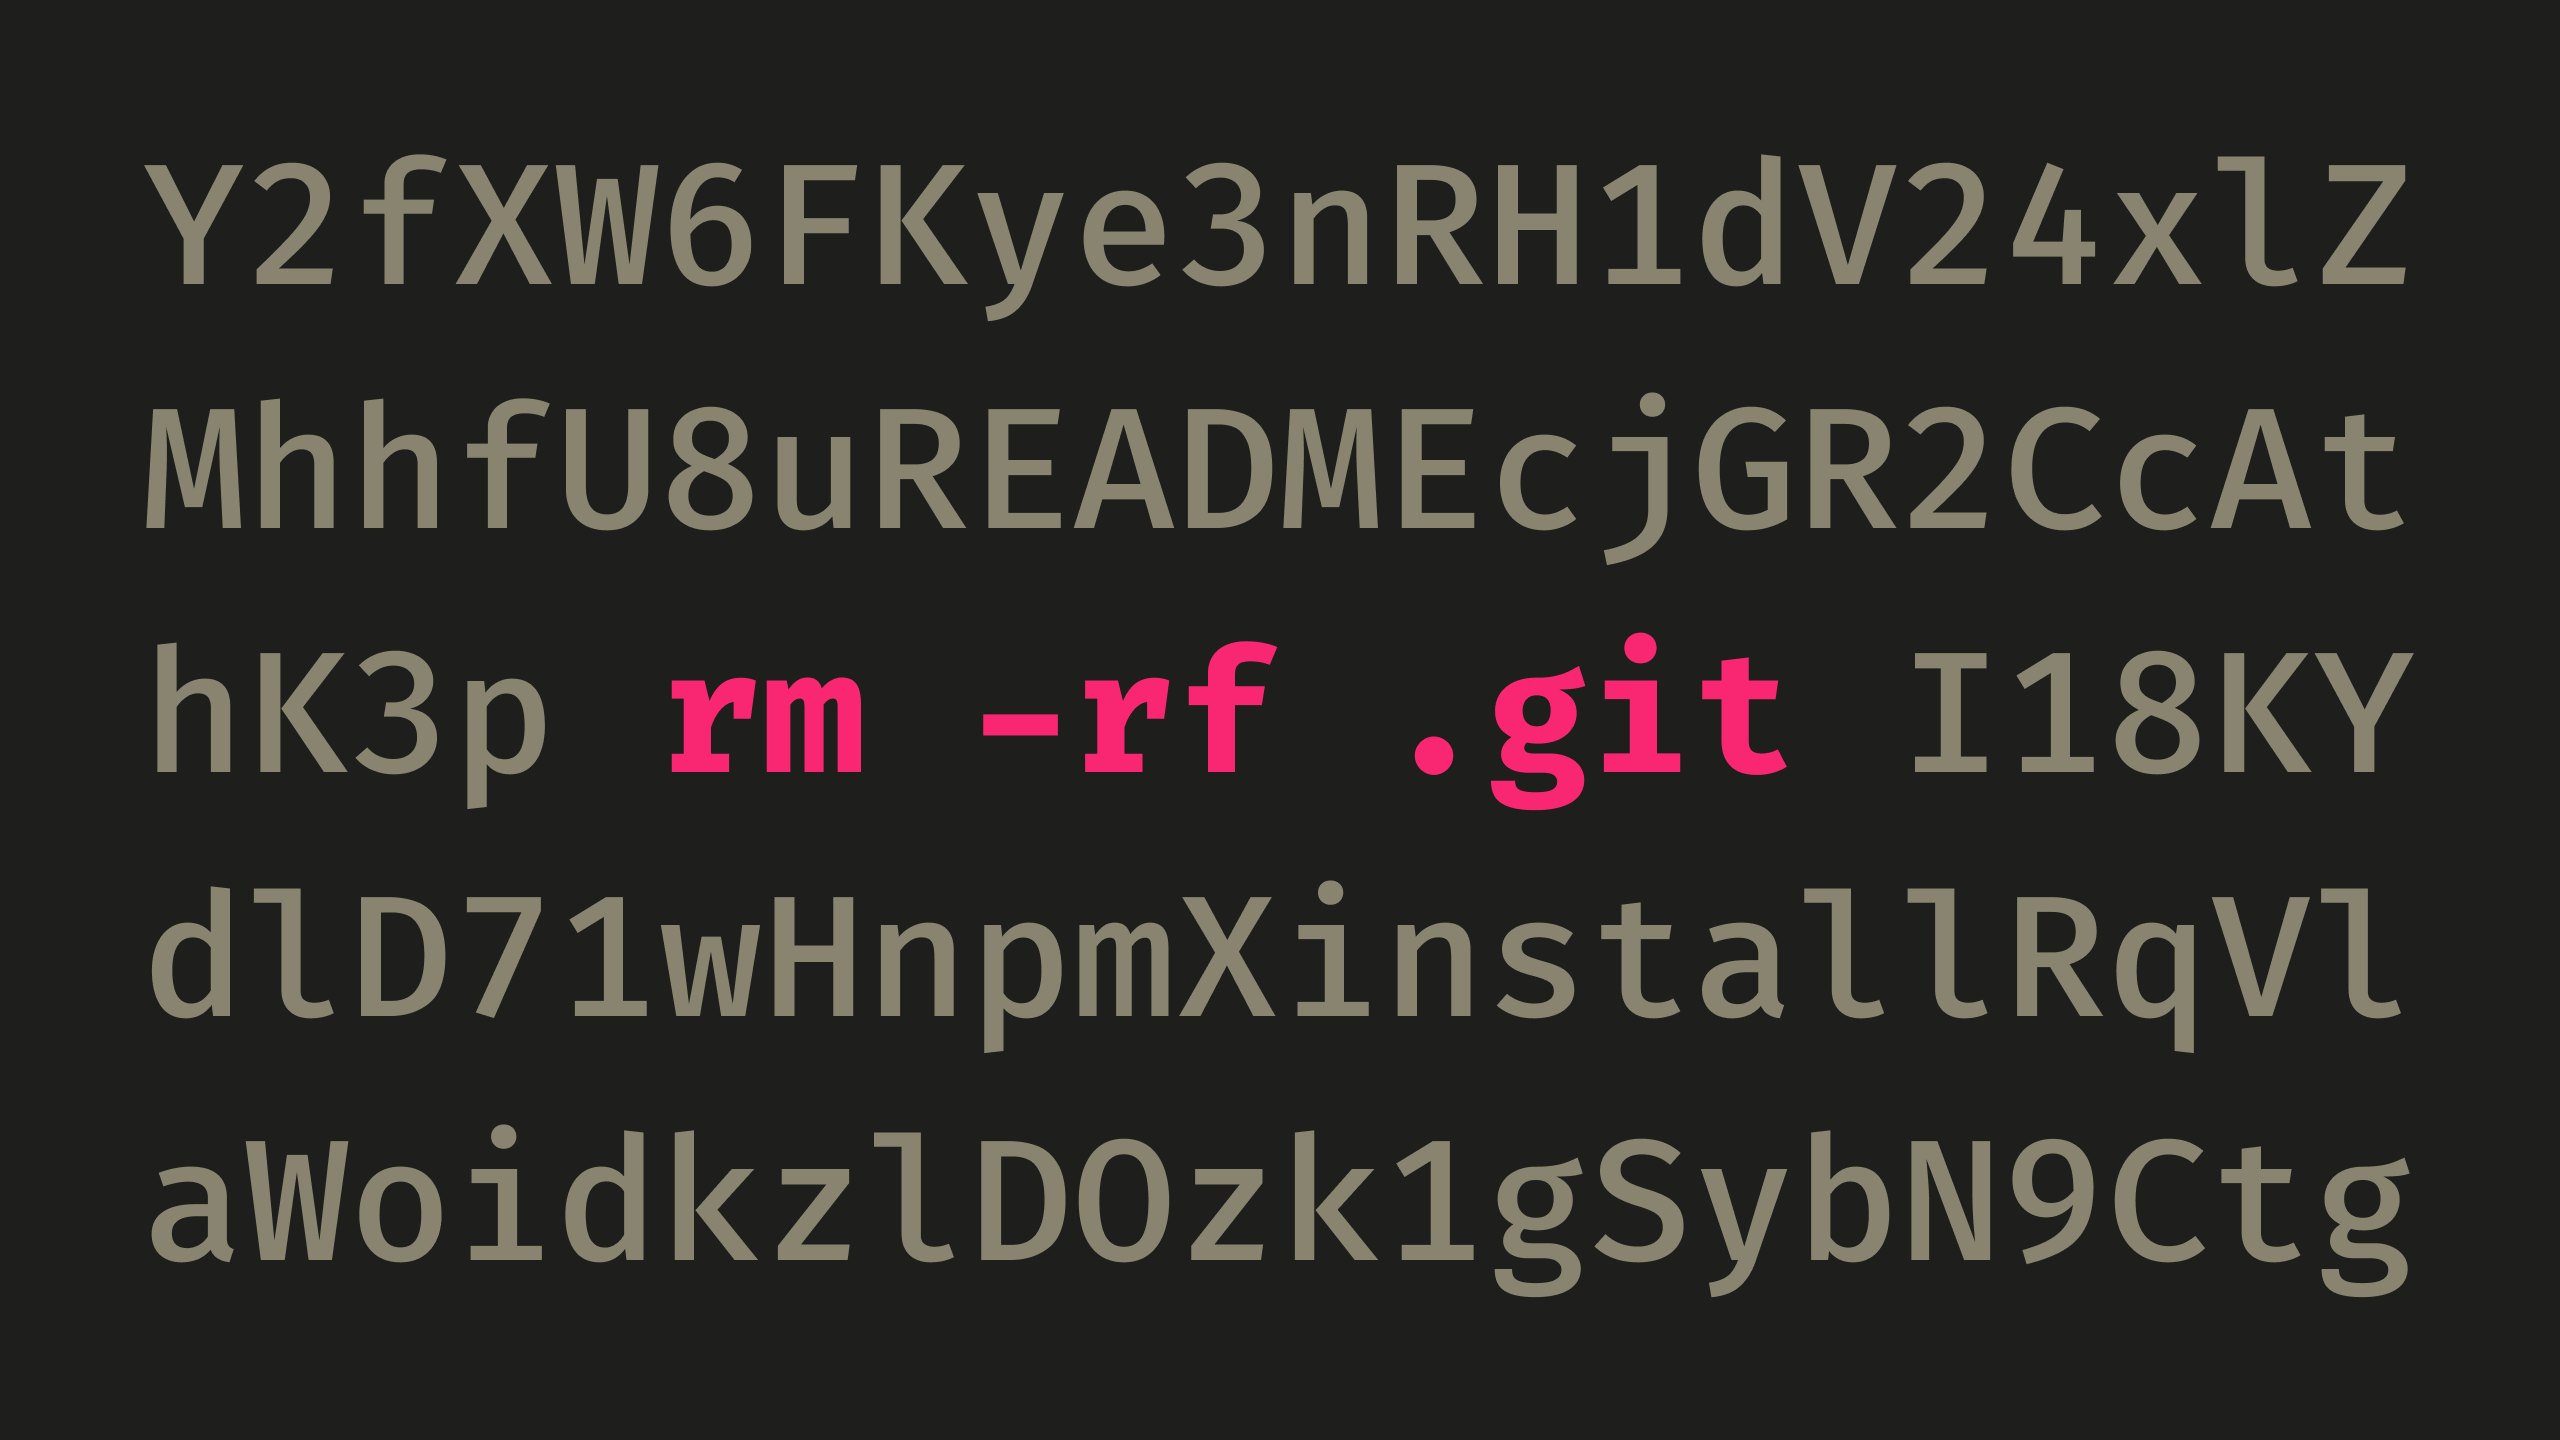 终端命令“rm -rf .git”，被随机字符包围。